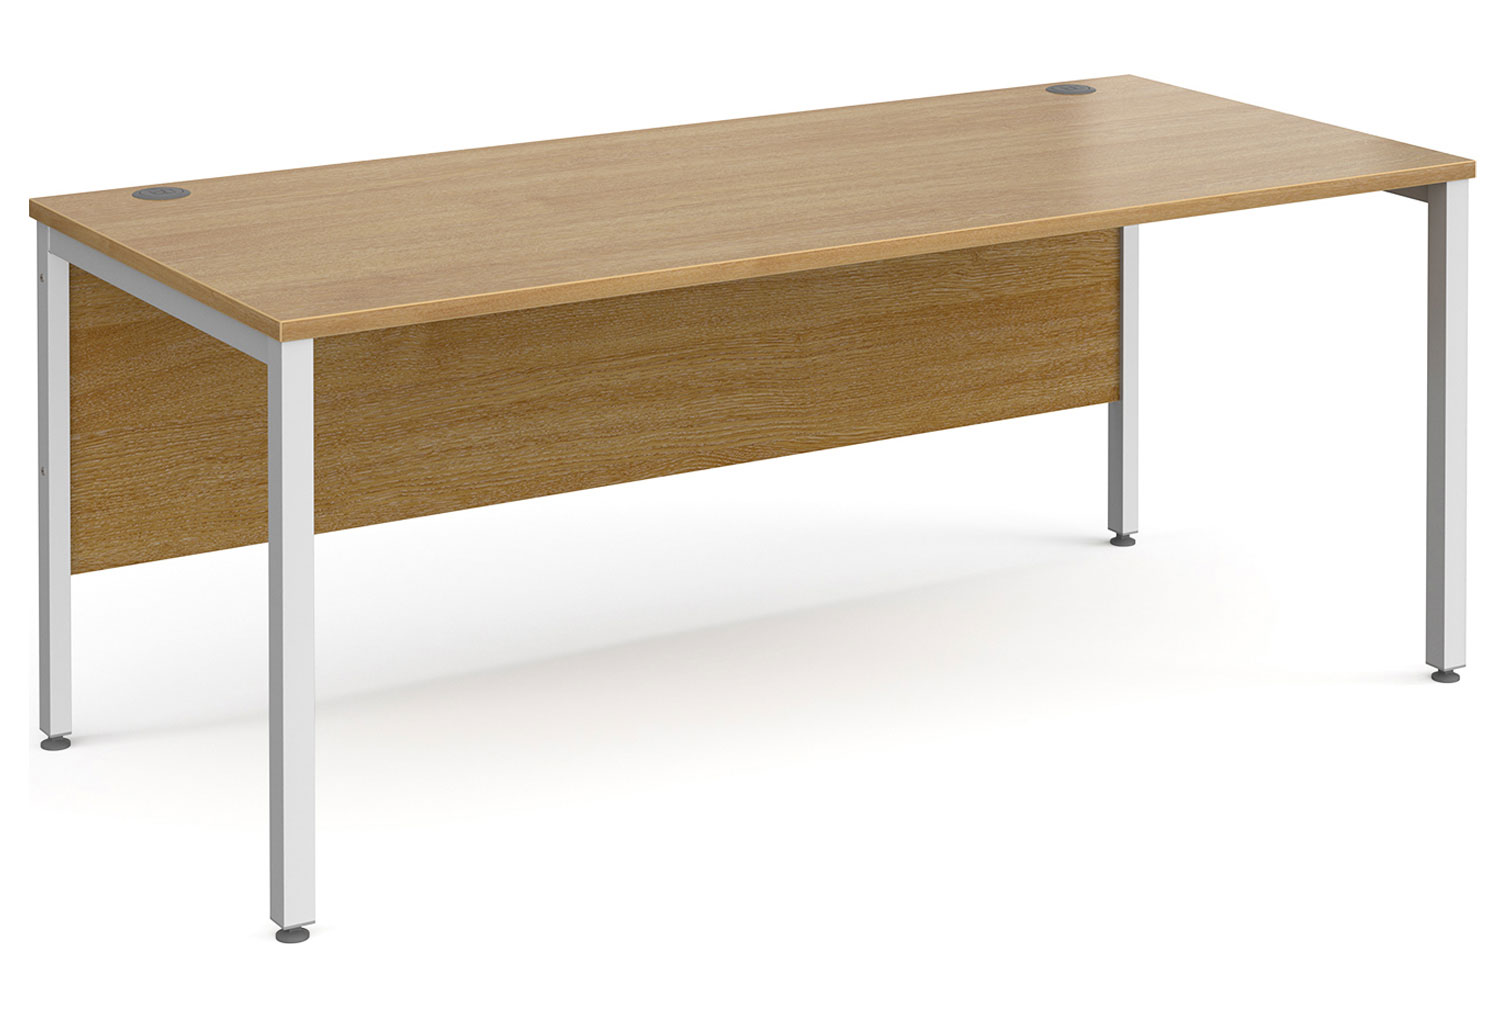 Tully Bench Rectangular Office Desk 180wx80dx73h (cm), Oak, Fully Installed